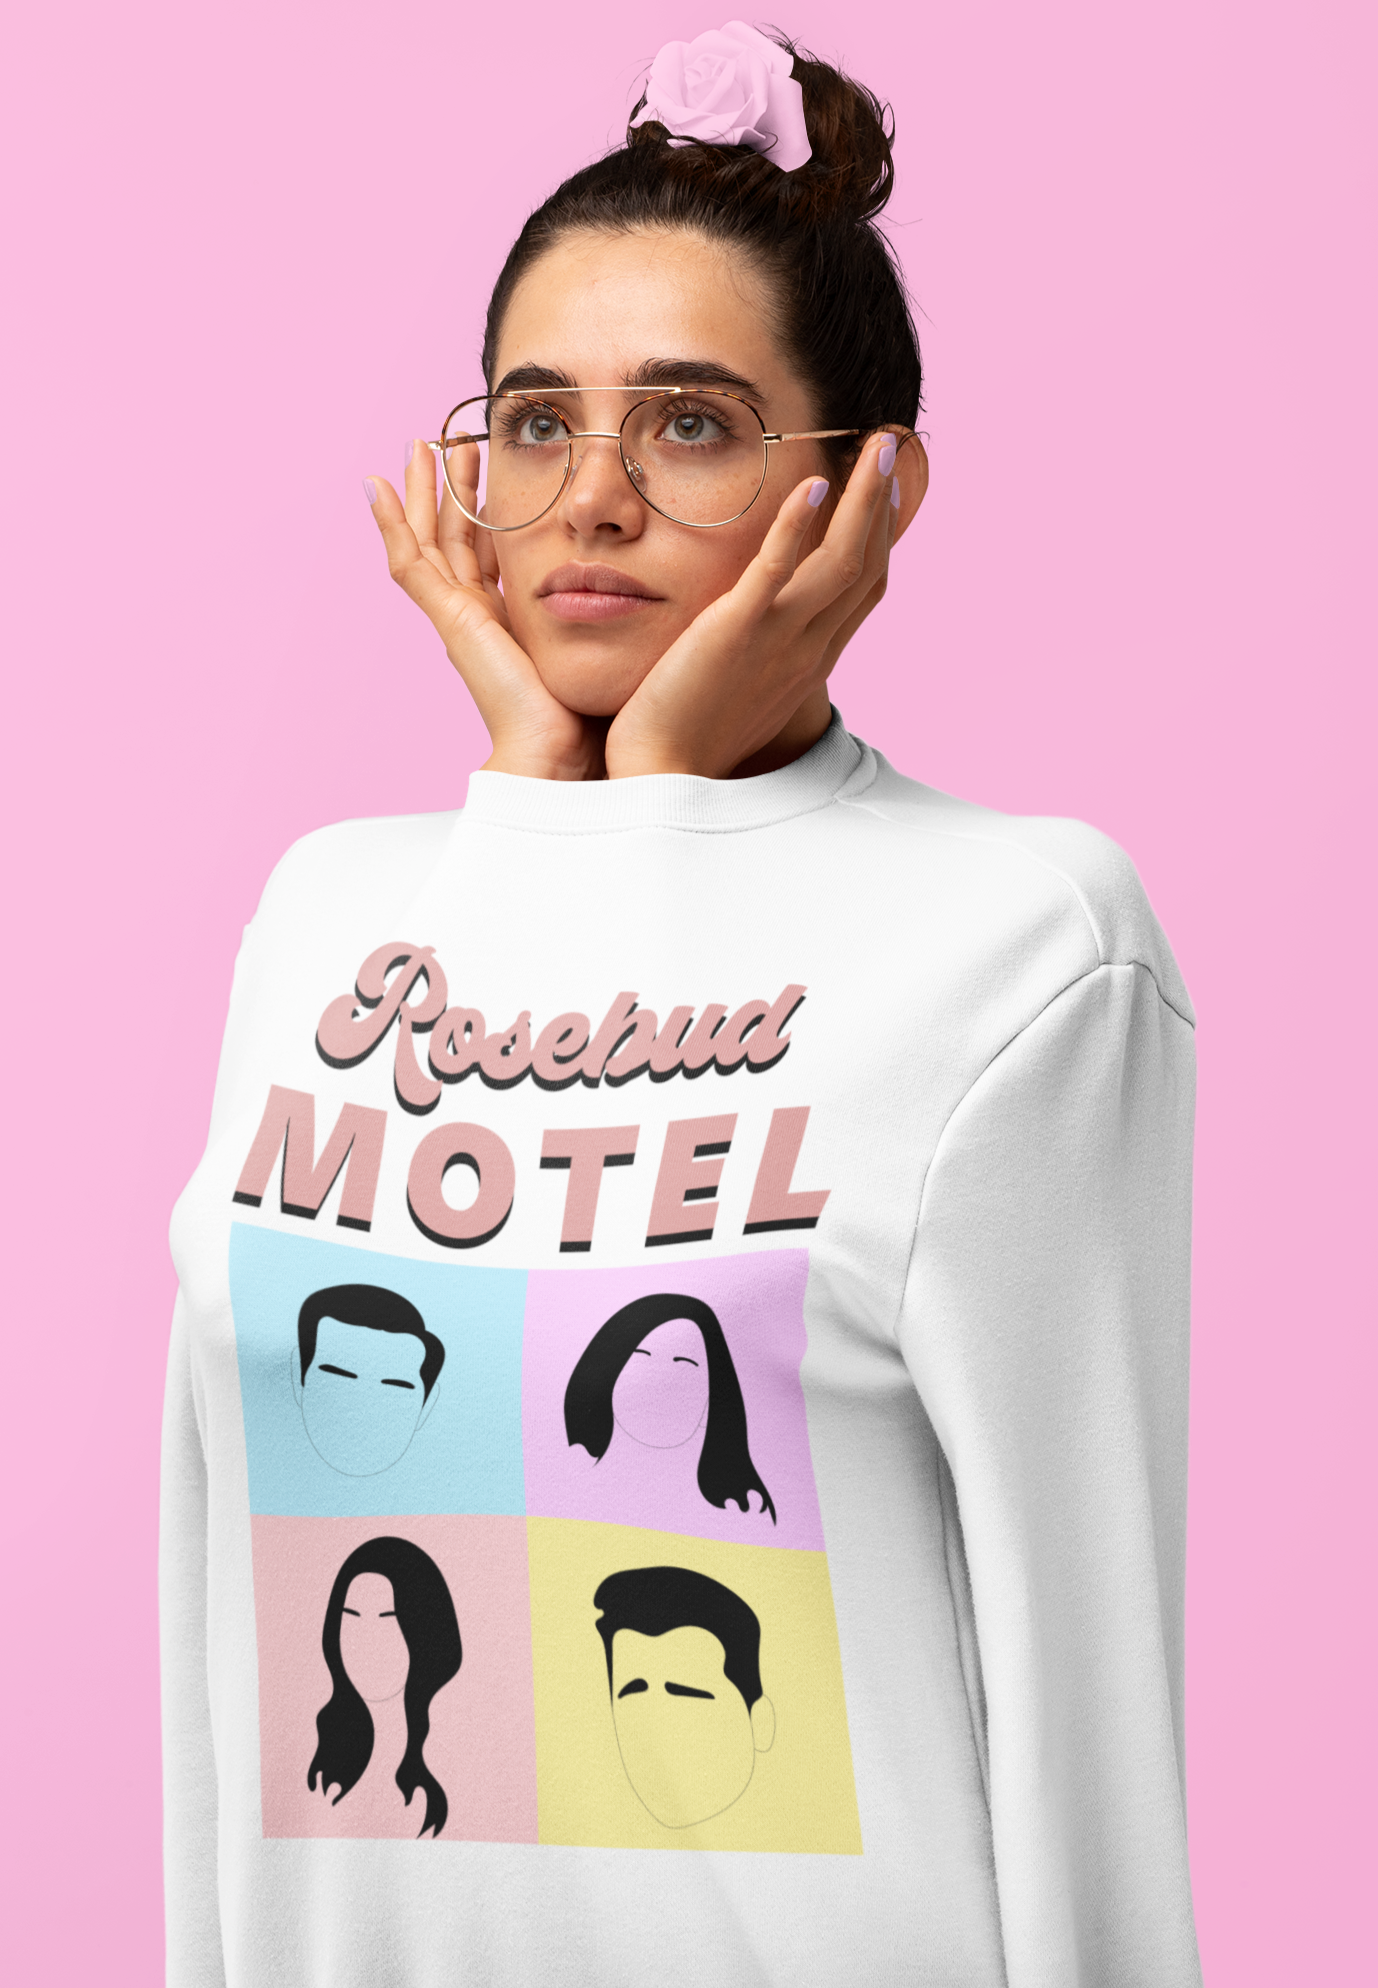 White sweatshirt saying rosebud motel with schitt's creek characters